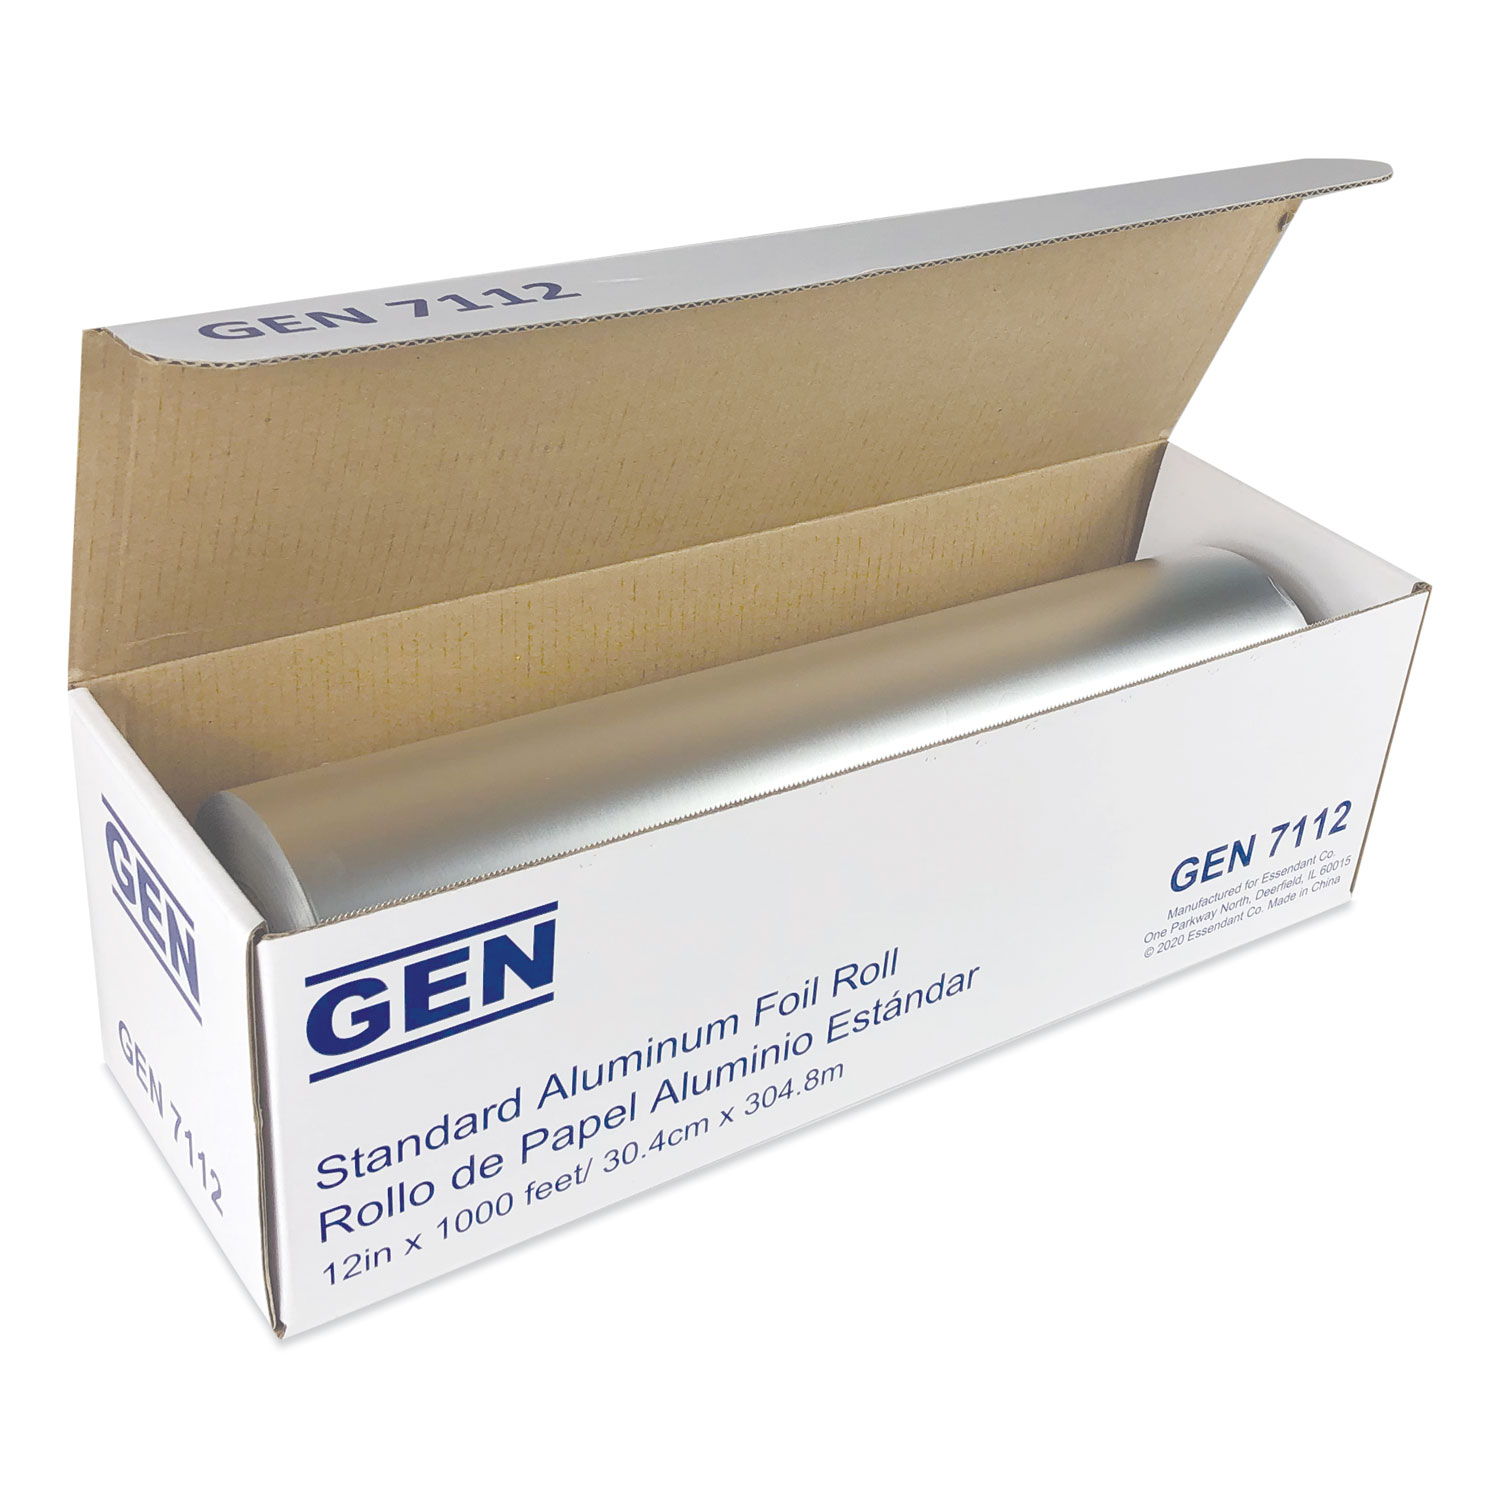 GEN Standard Aluminum Foil Roll, 12 x 1,000 ft, 6/Carton